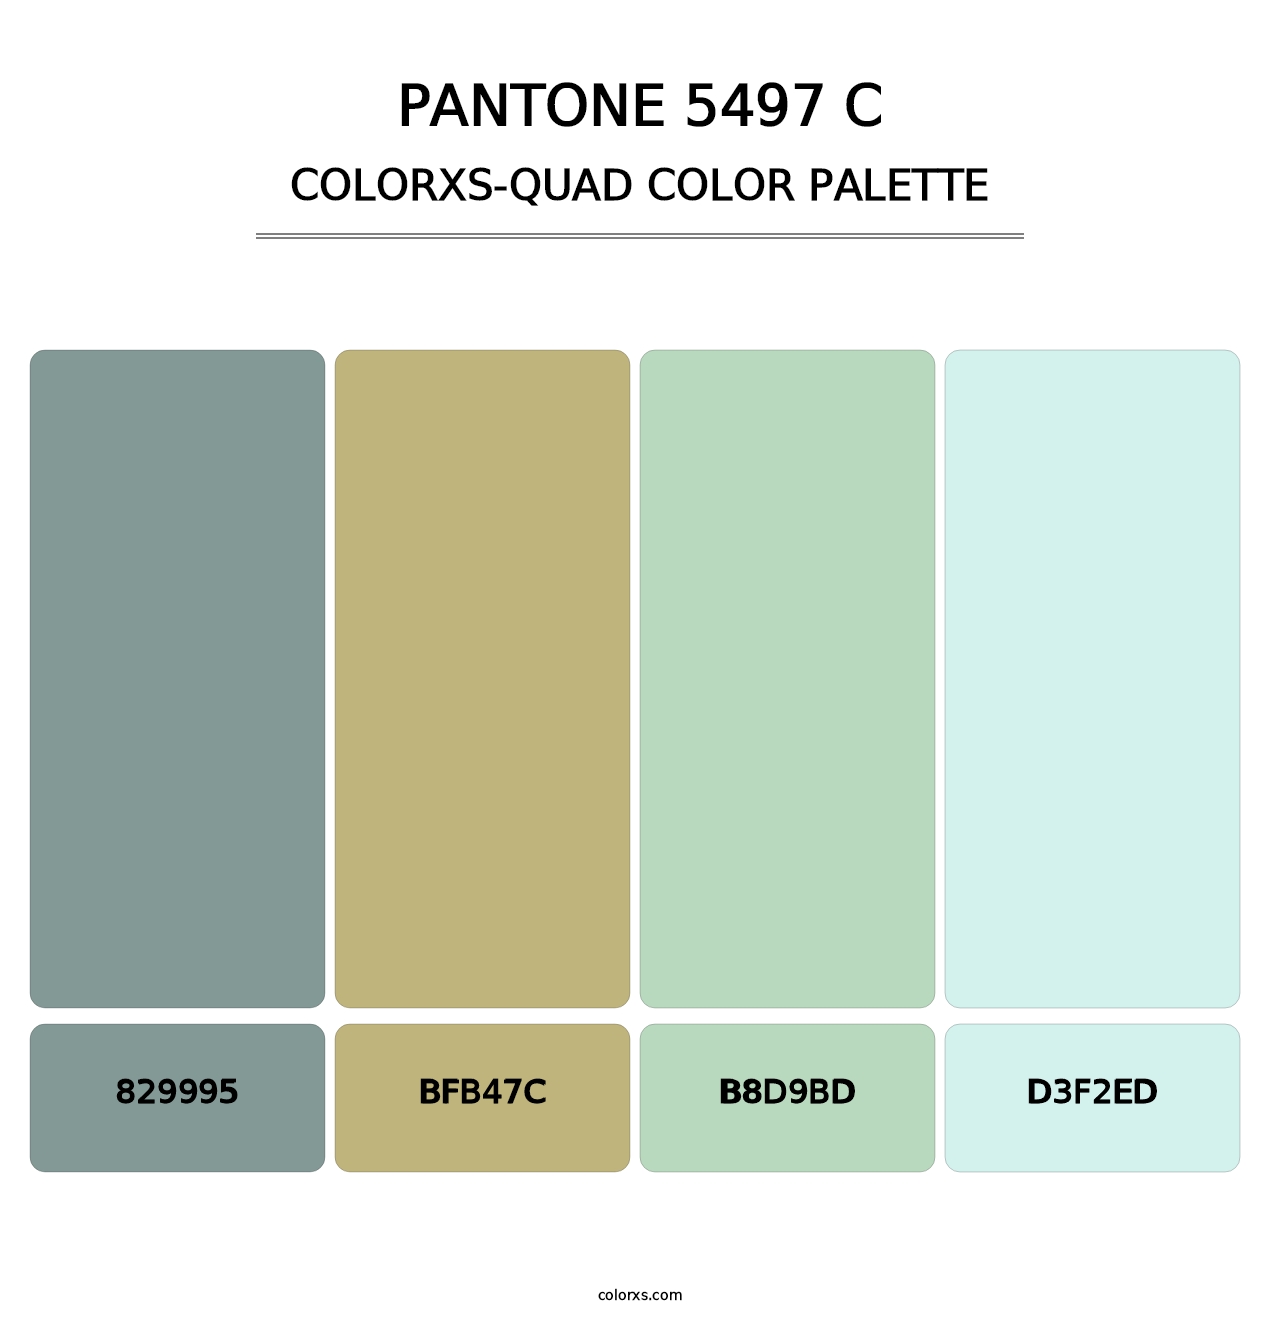 PANTONE 5497 C - Colorxs Quad Palette